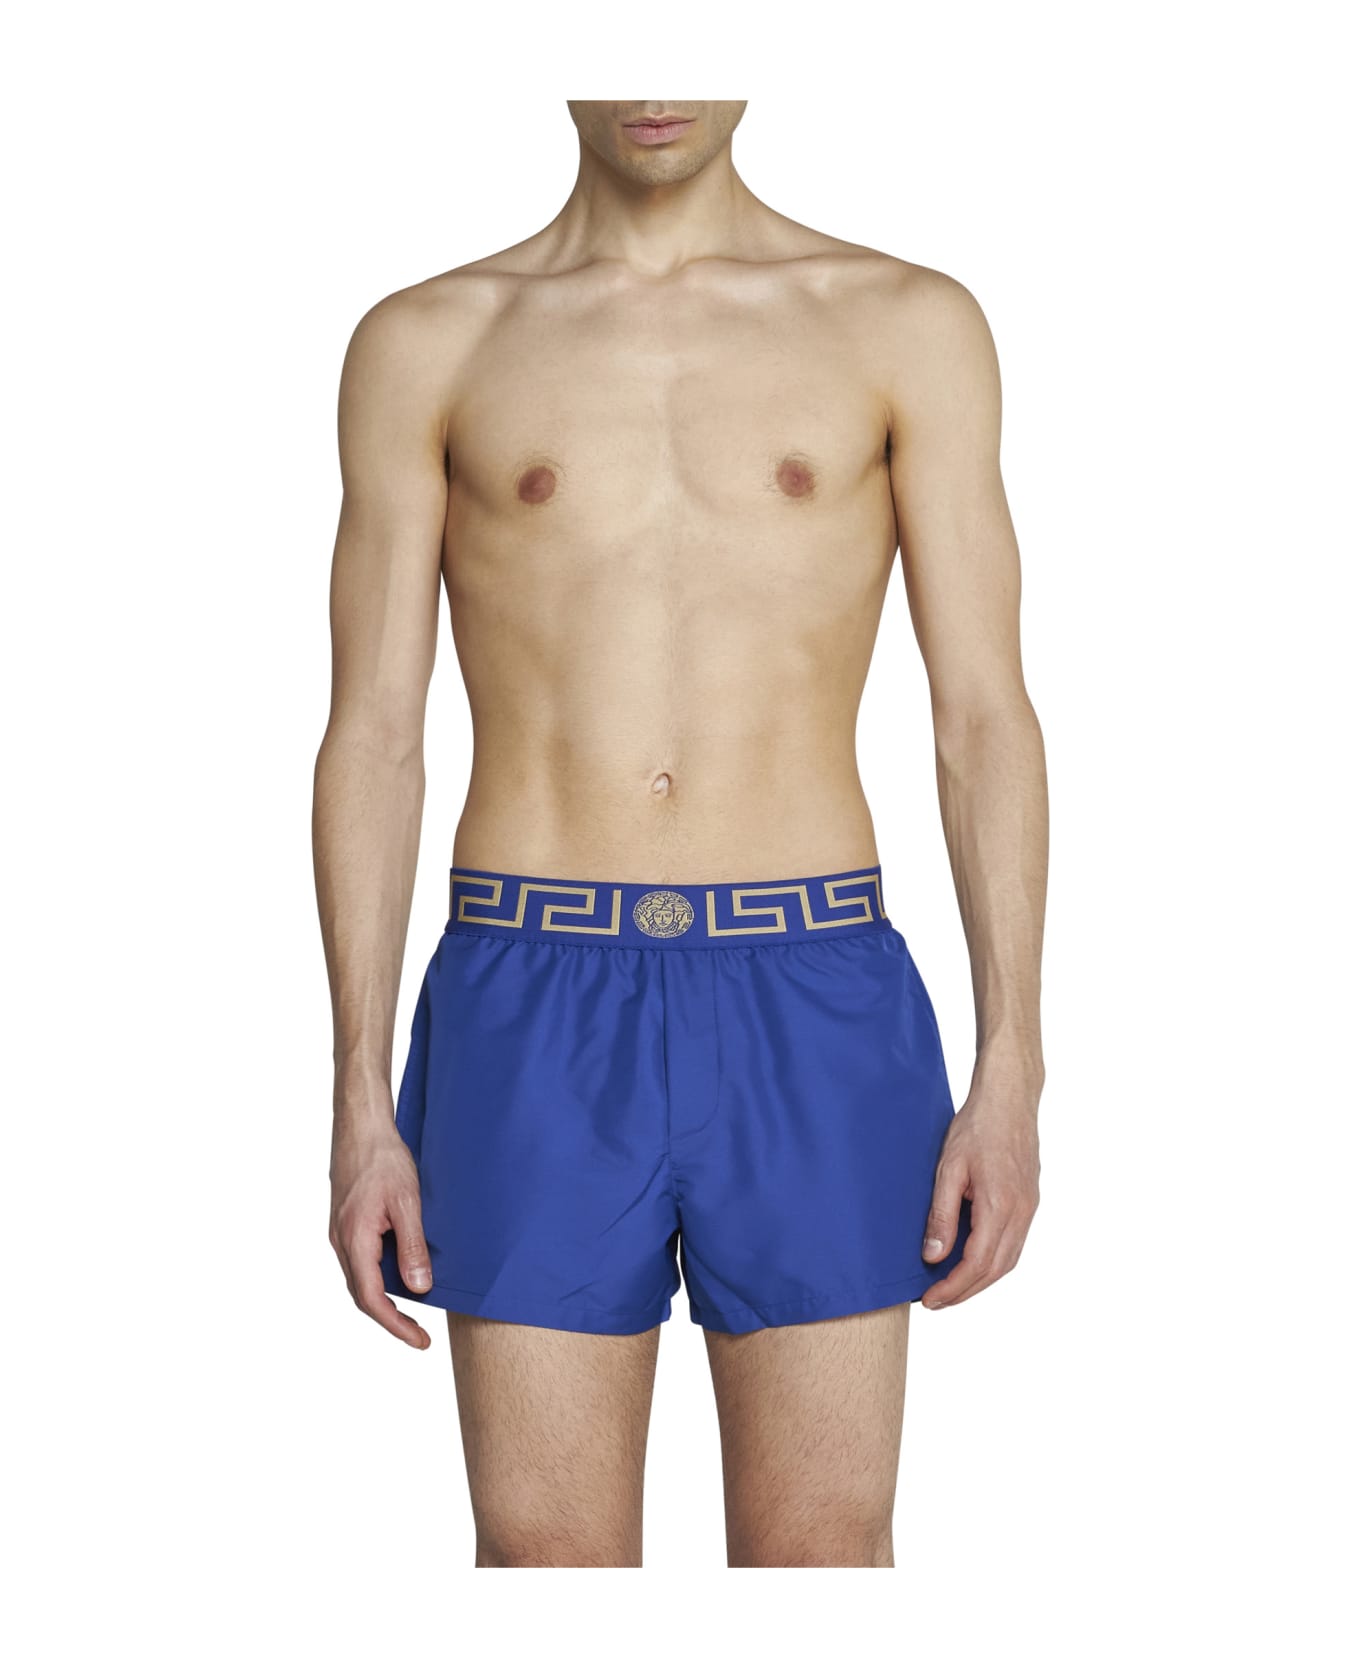 Versace Greca Bluette Nylon Swim Shorts Man - Bluette-gold 水着